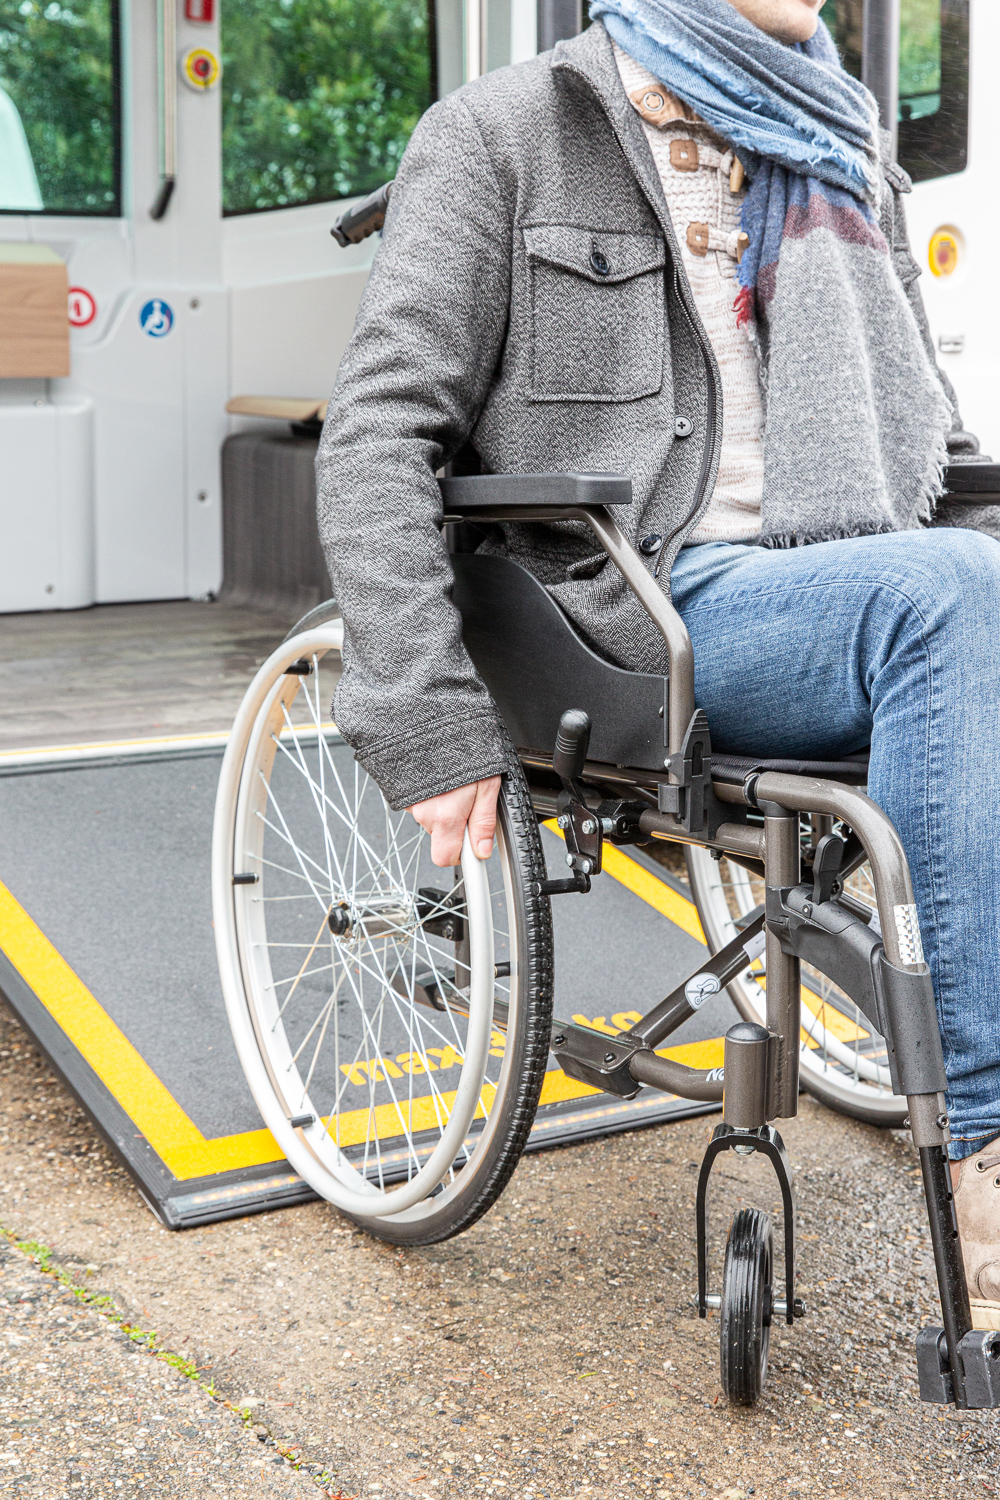 Un fauteuil roulant démontre l'accessibilité de la rampe du véhicule